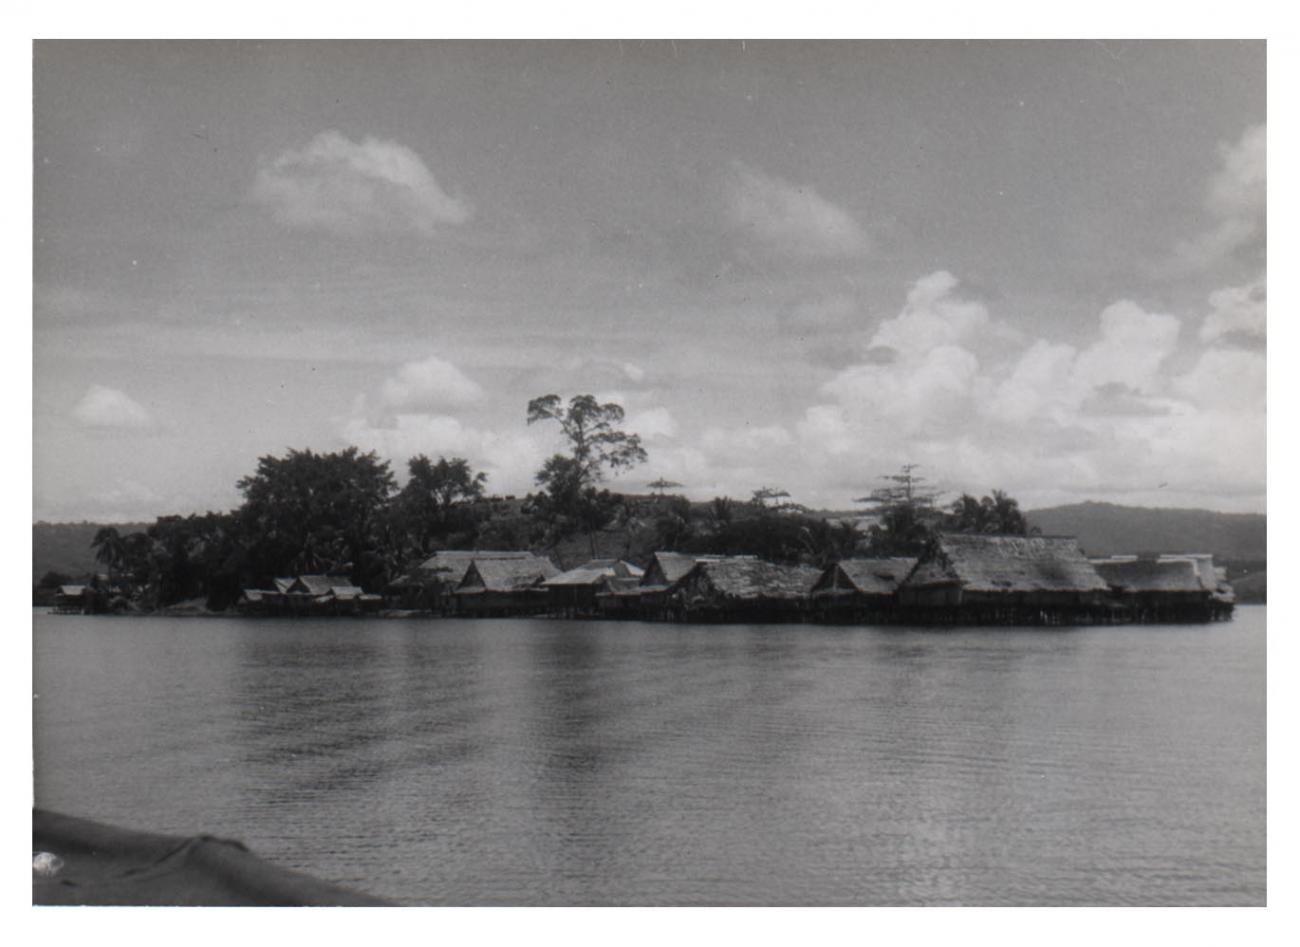 BD/54/3 - 
Kampong Ifar aan kust Sentanimeer, groepsfoto met o.m. aalmoezenier?
